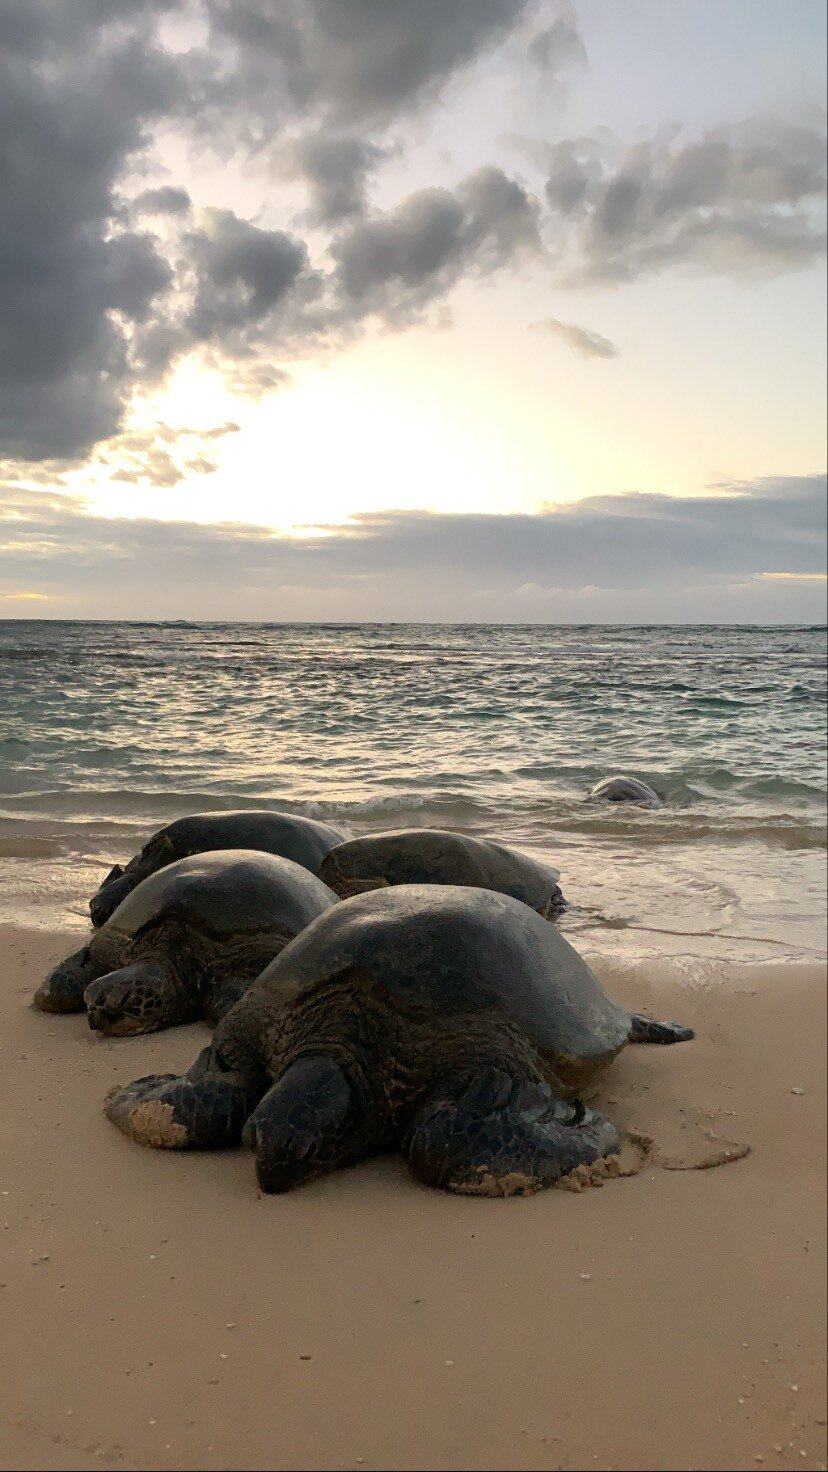 Hawaii Photographer - sea turtles of Hawaii 04.jpg